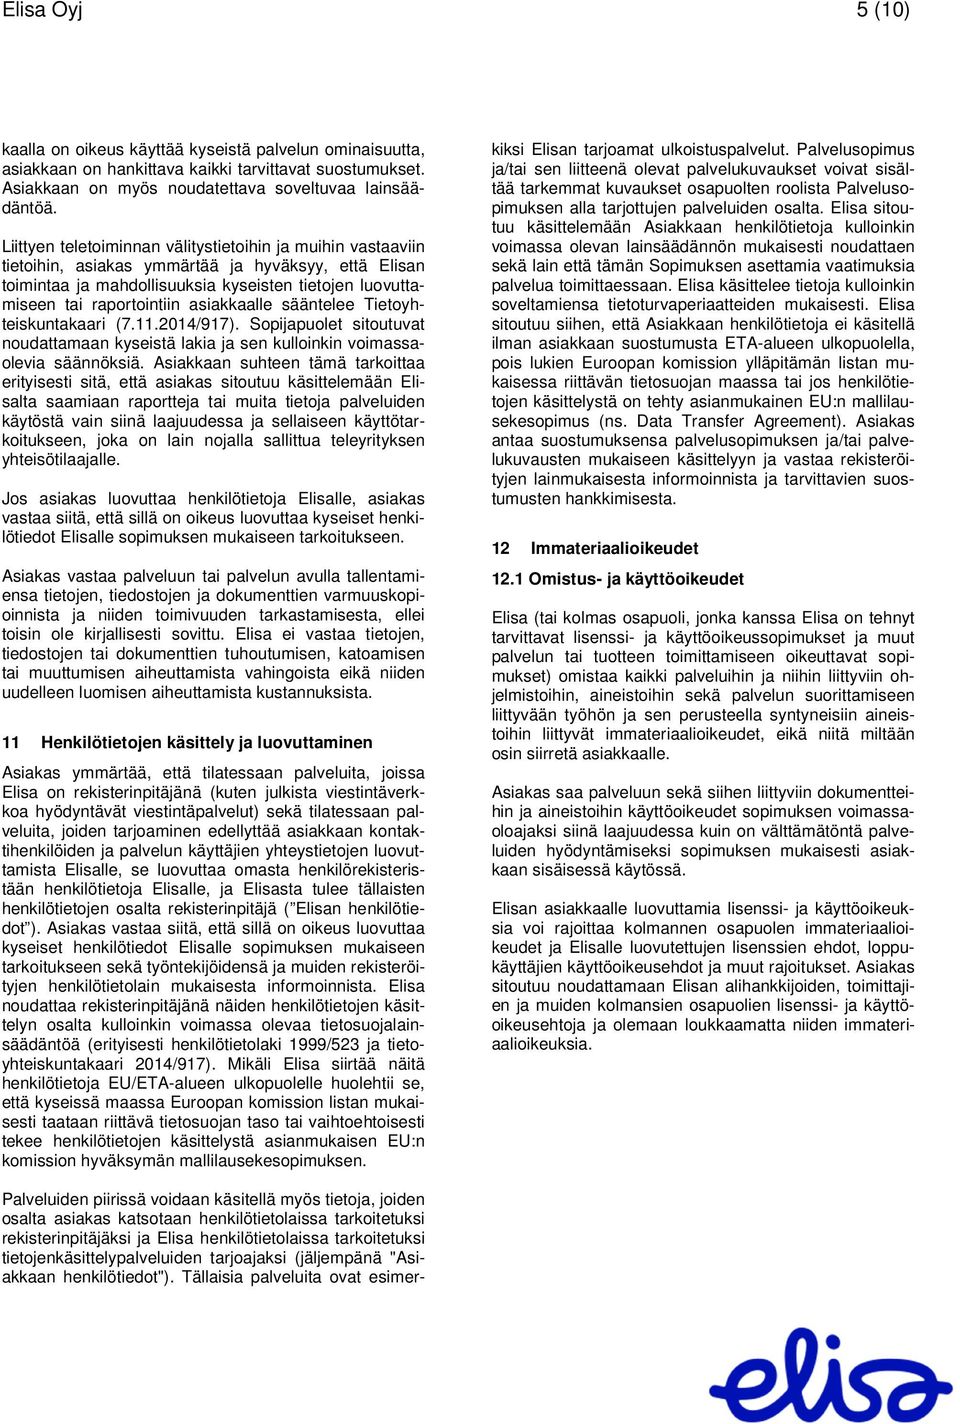 asiakkaalle sääntelee Tietoyhteiskuntakaari (7.11.2014/917). Sopijapuolet sitoutuvat noudattamaan kyseistä lakia ja sen kulloinkin voimassaolevia säännöksiä.